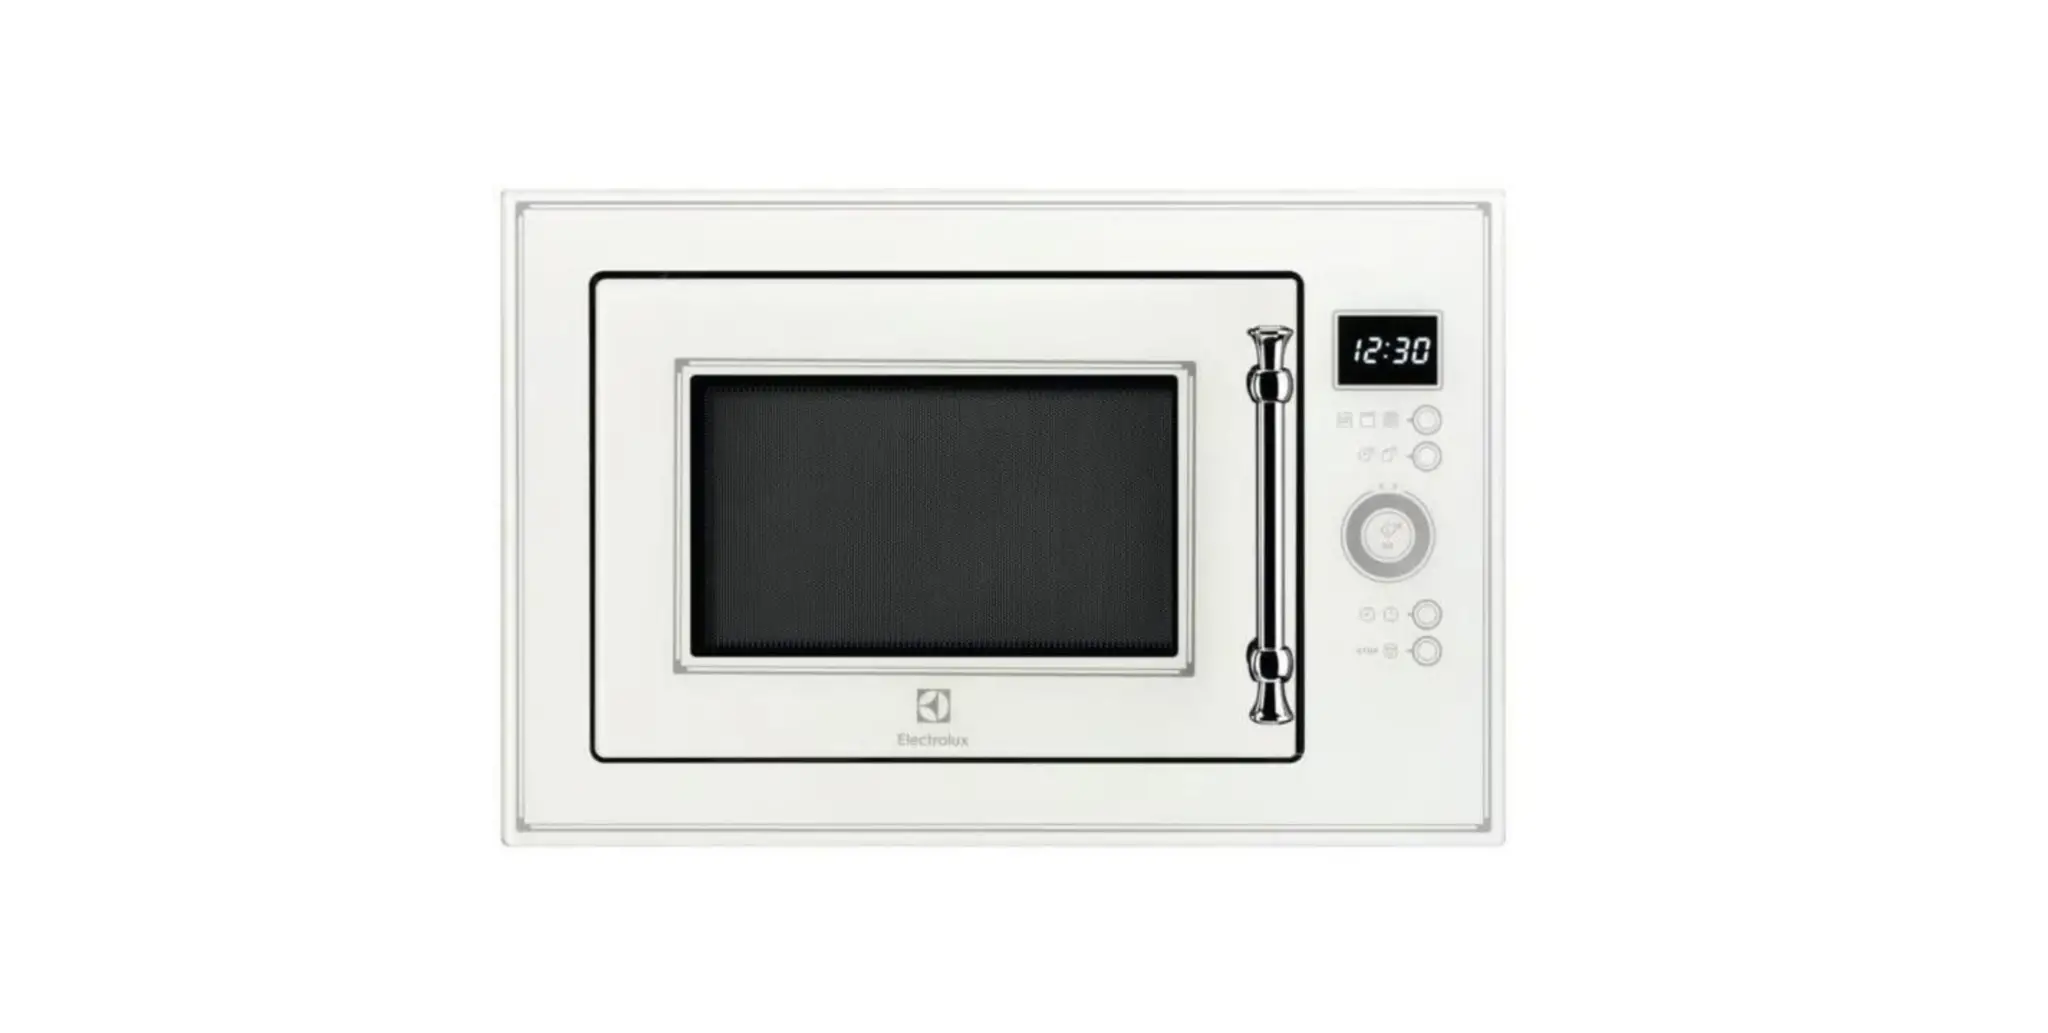 EMT25203C Microwave Oven